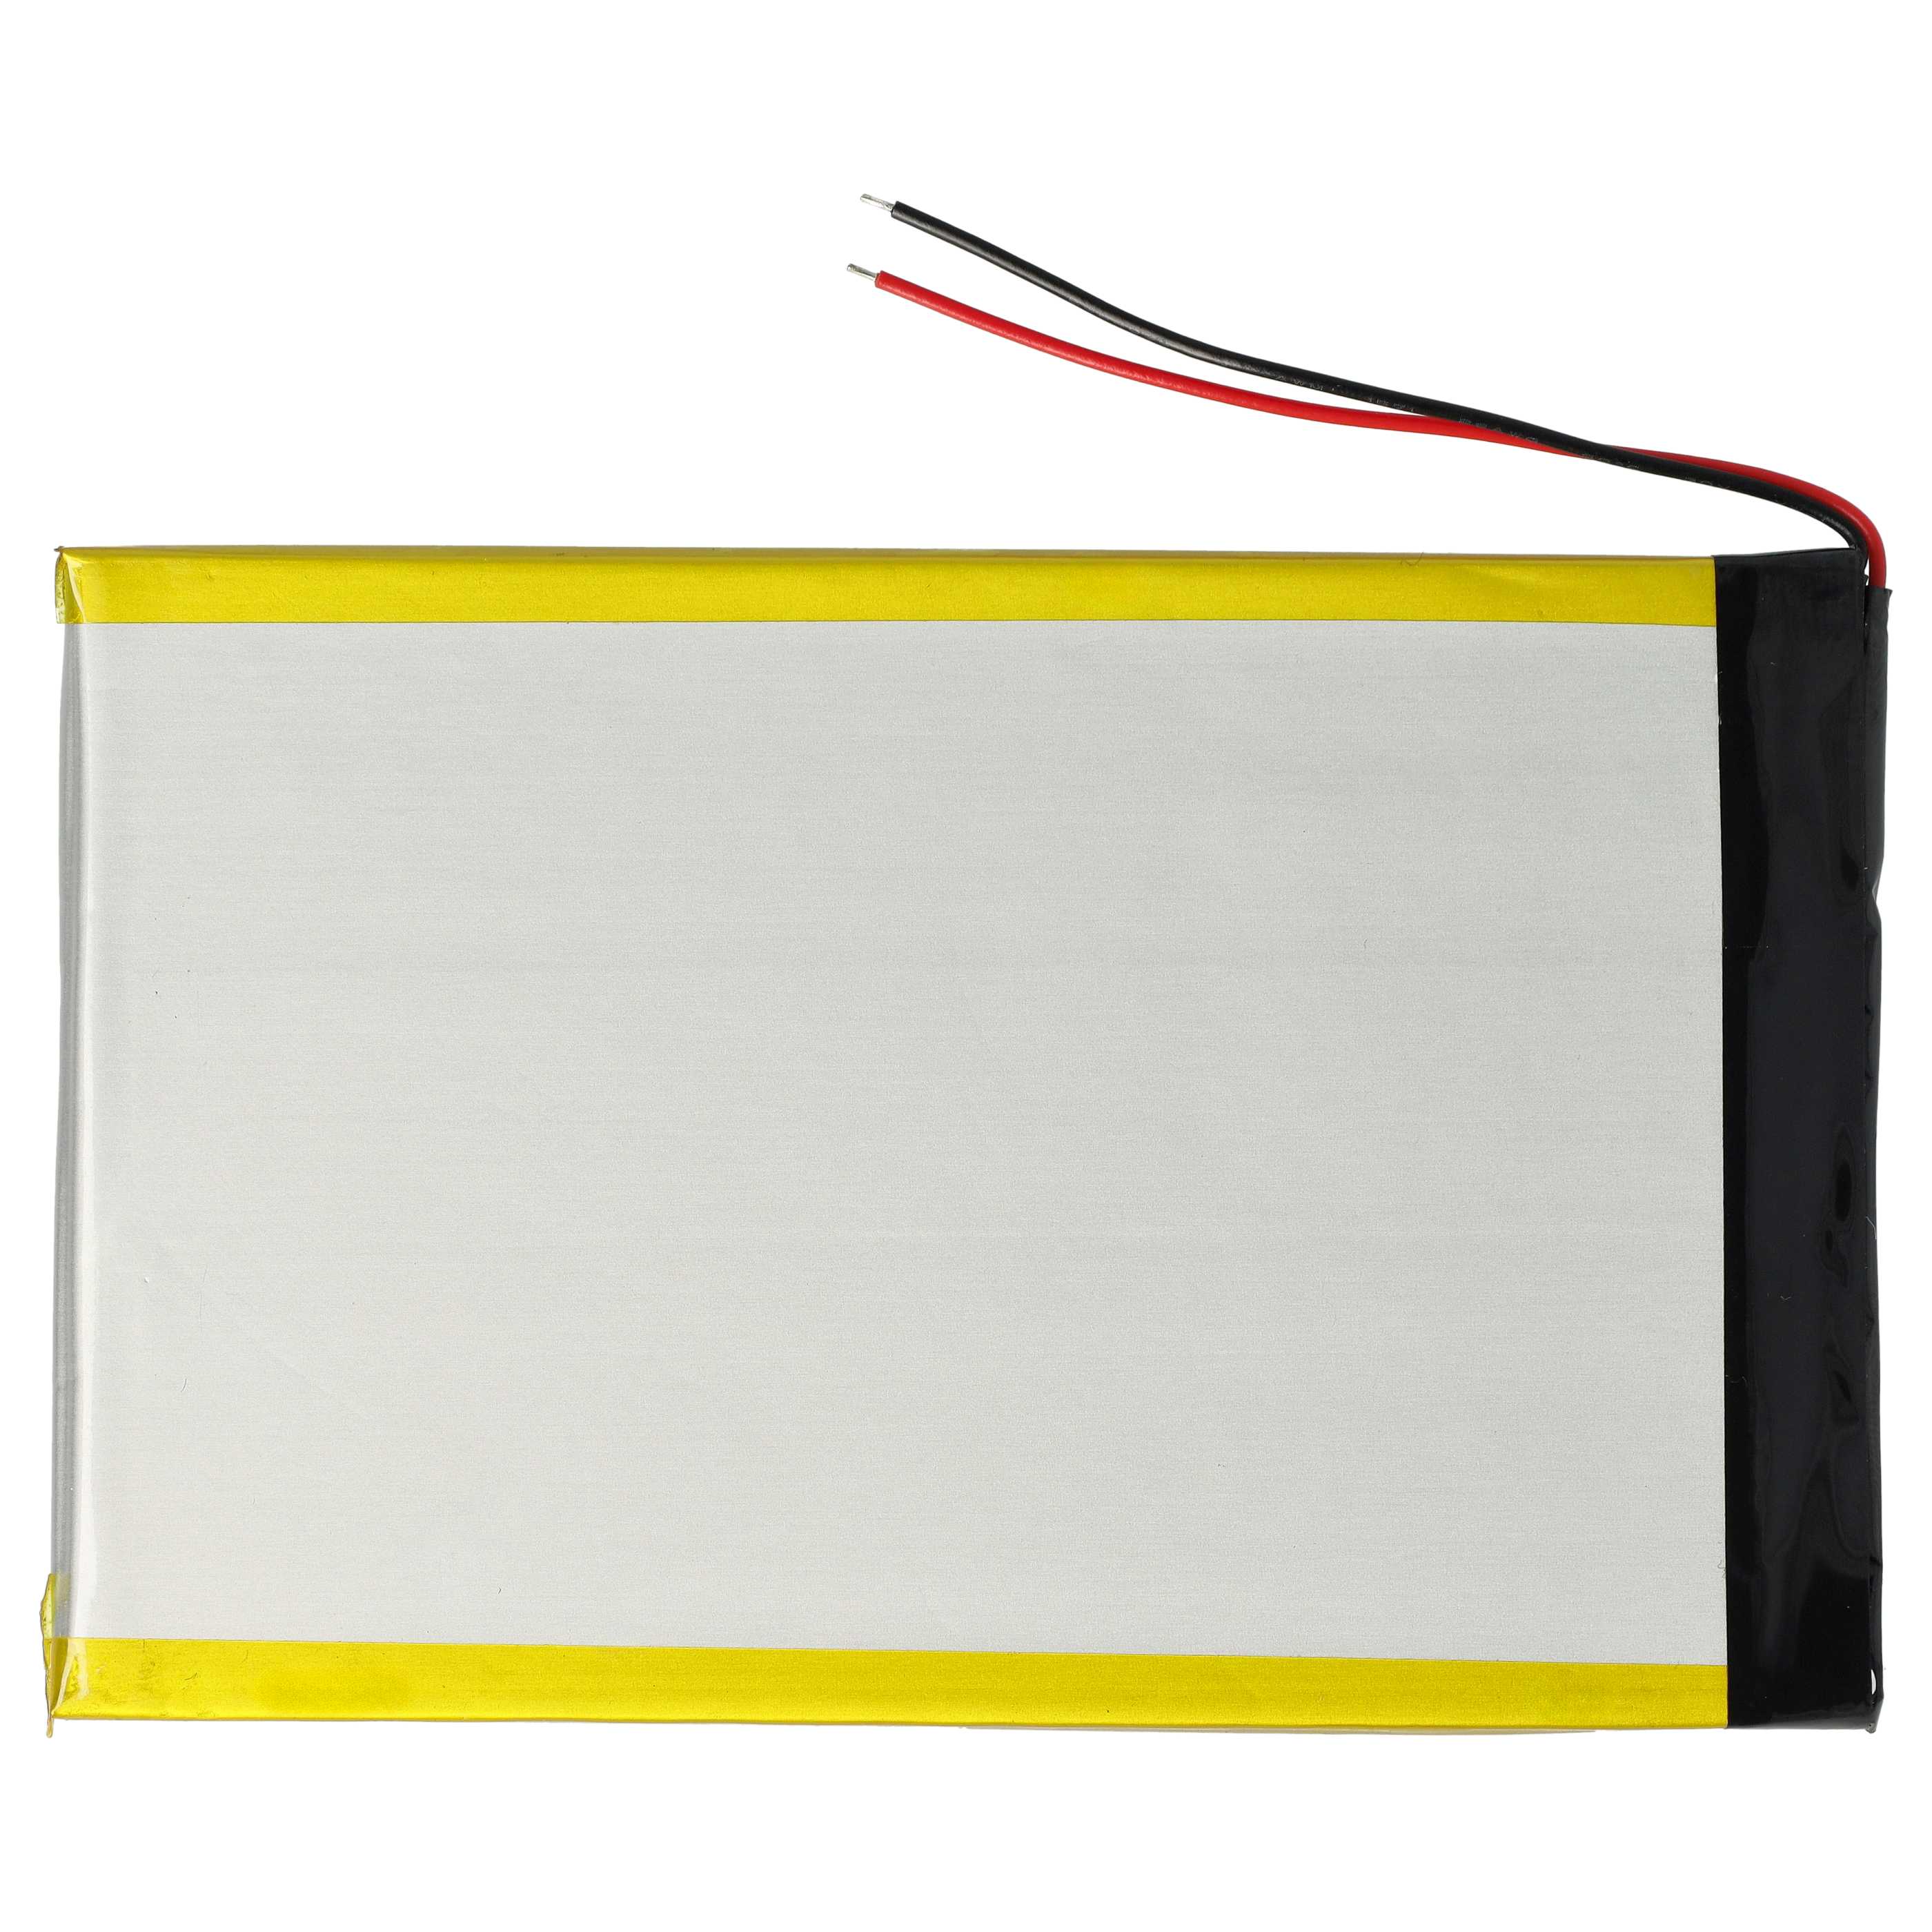 Batteria per tablet sostituisce PT3867103 RCA - 3000mAh 3,7V Li-Poly